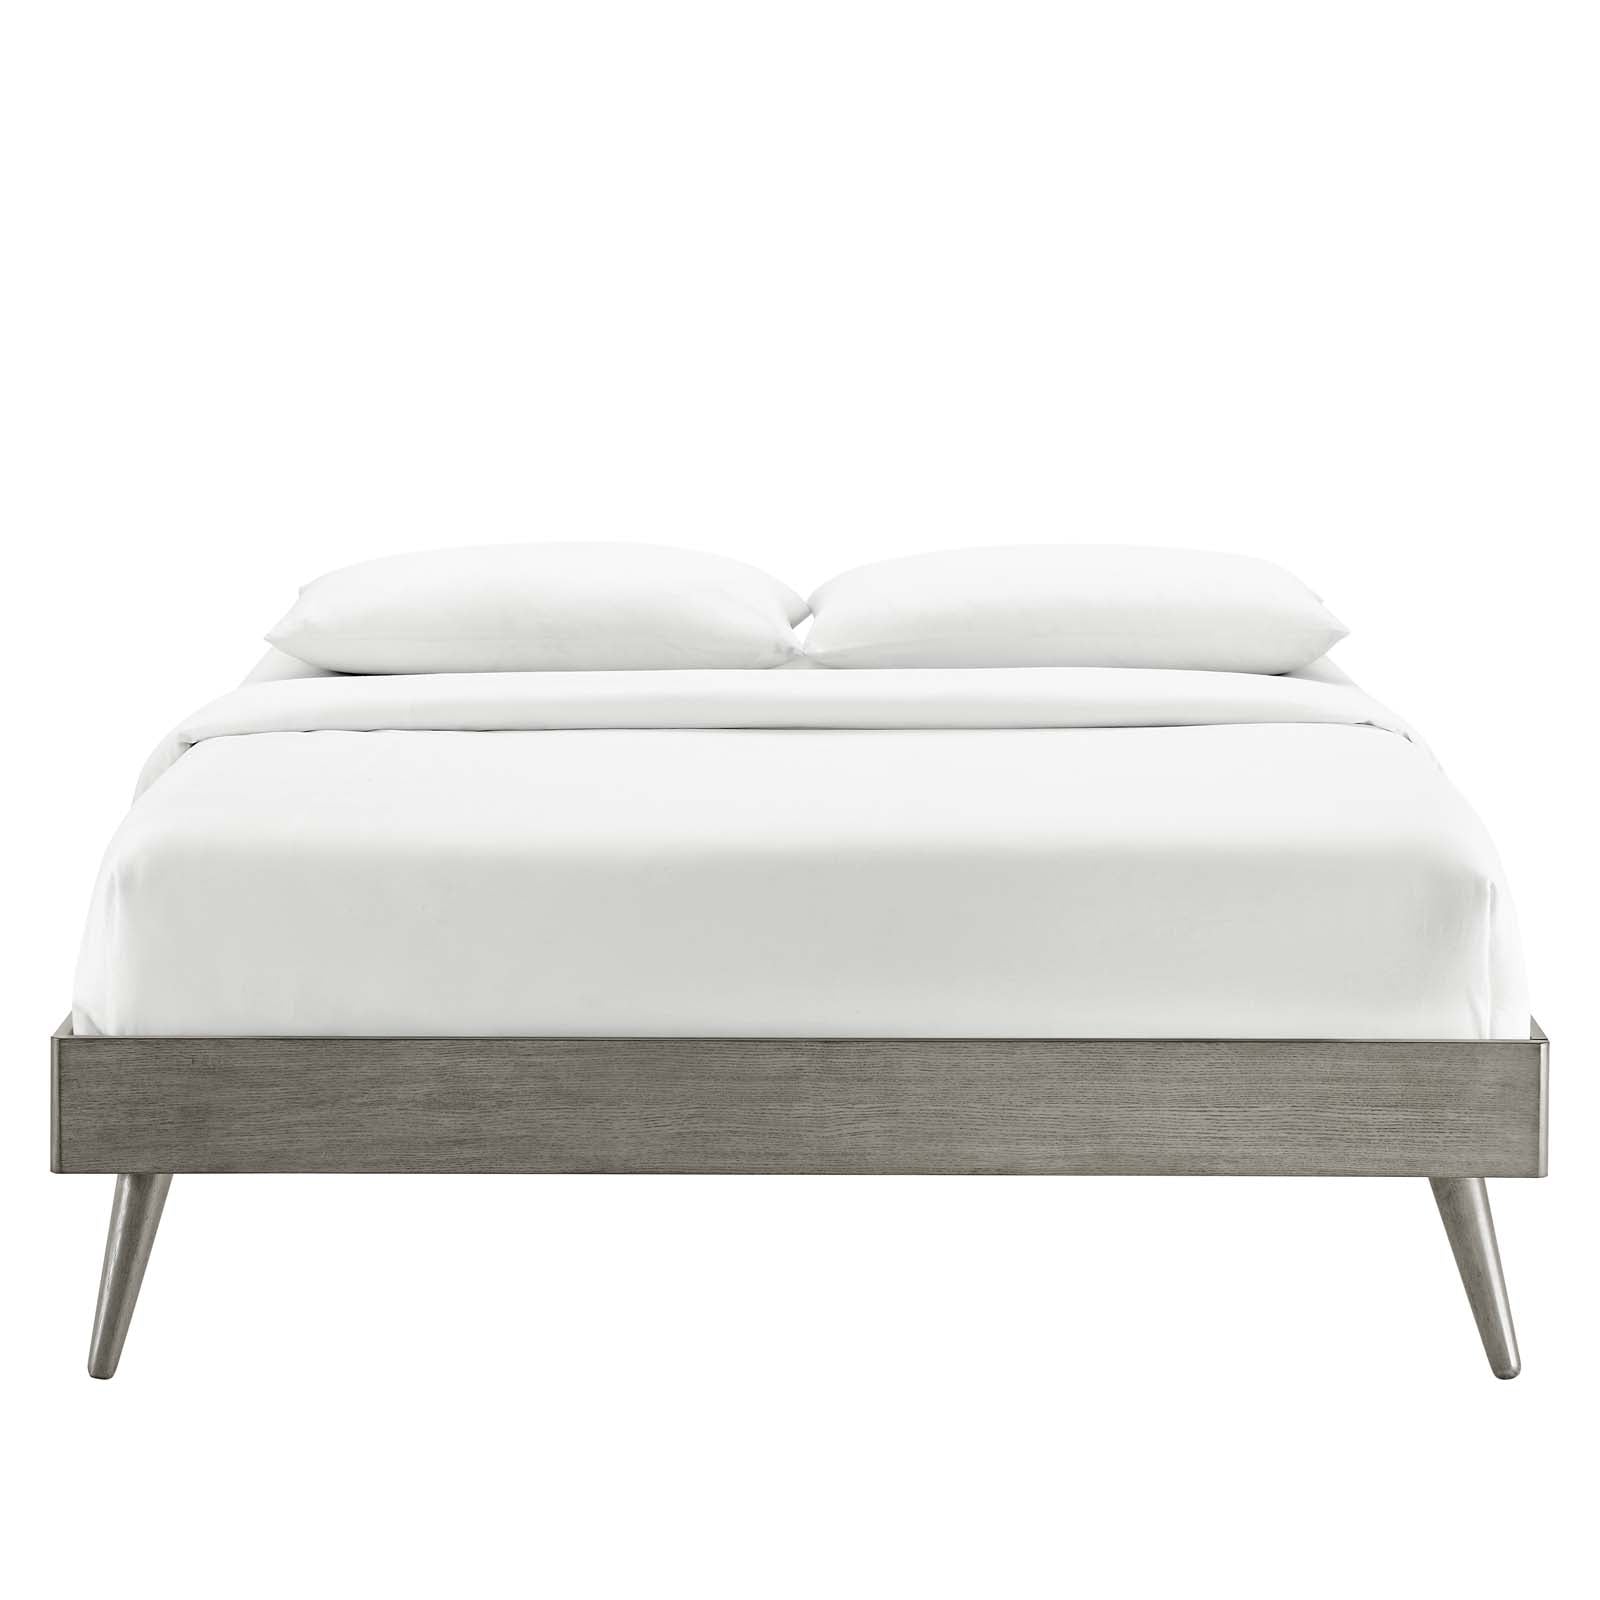 Modway Beds - Margo Full Wood Platform Bed Frame Gray